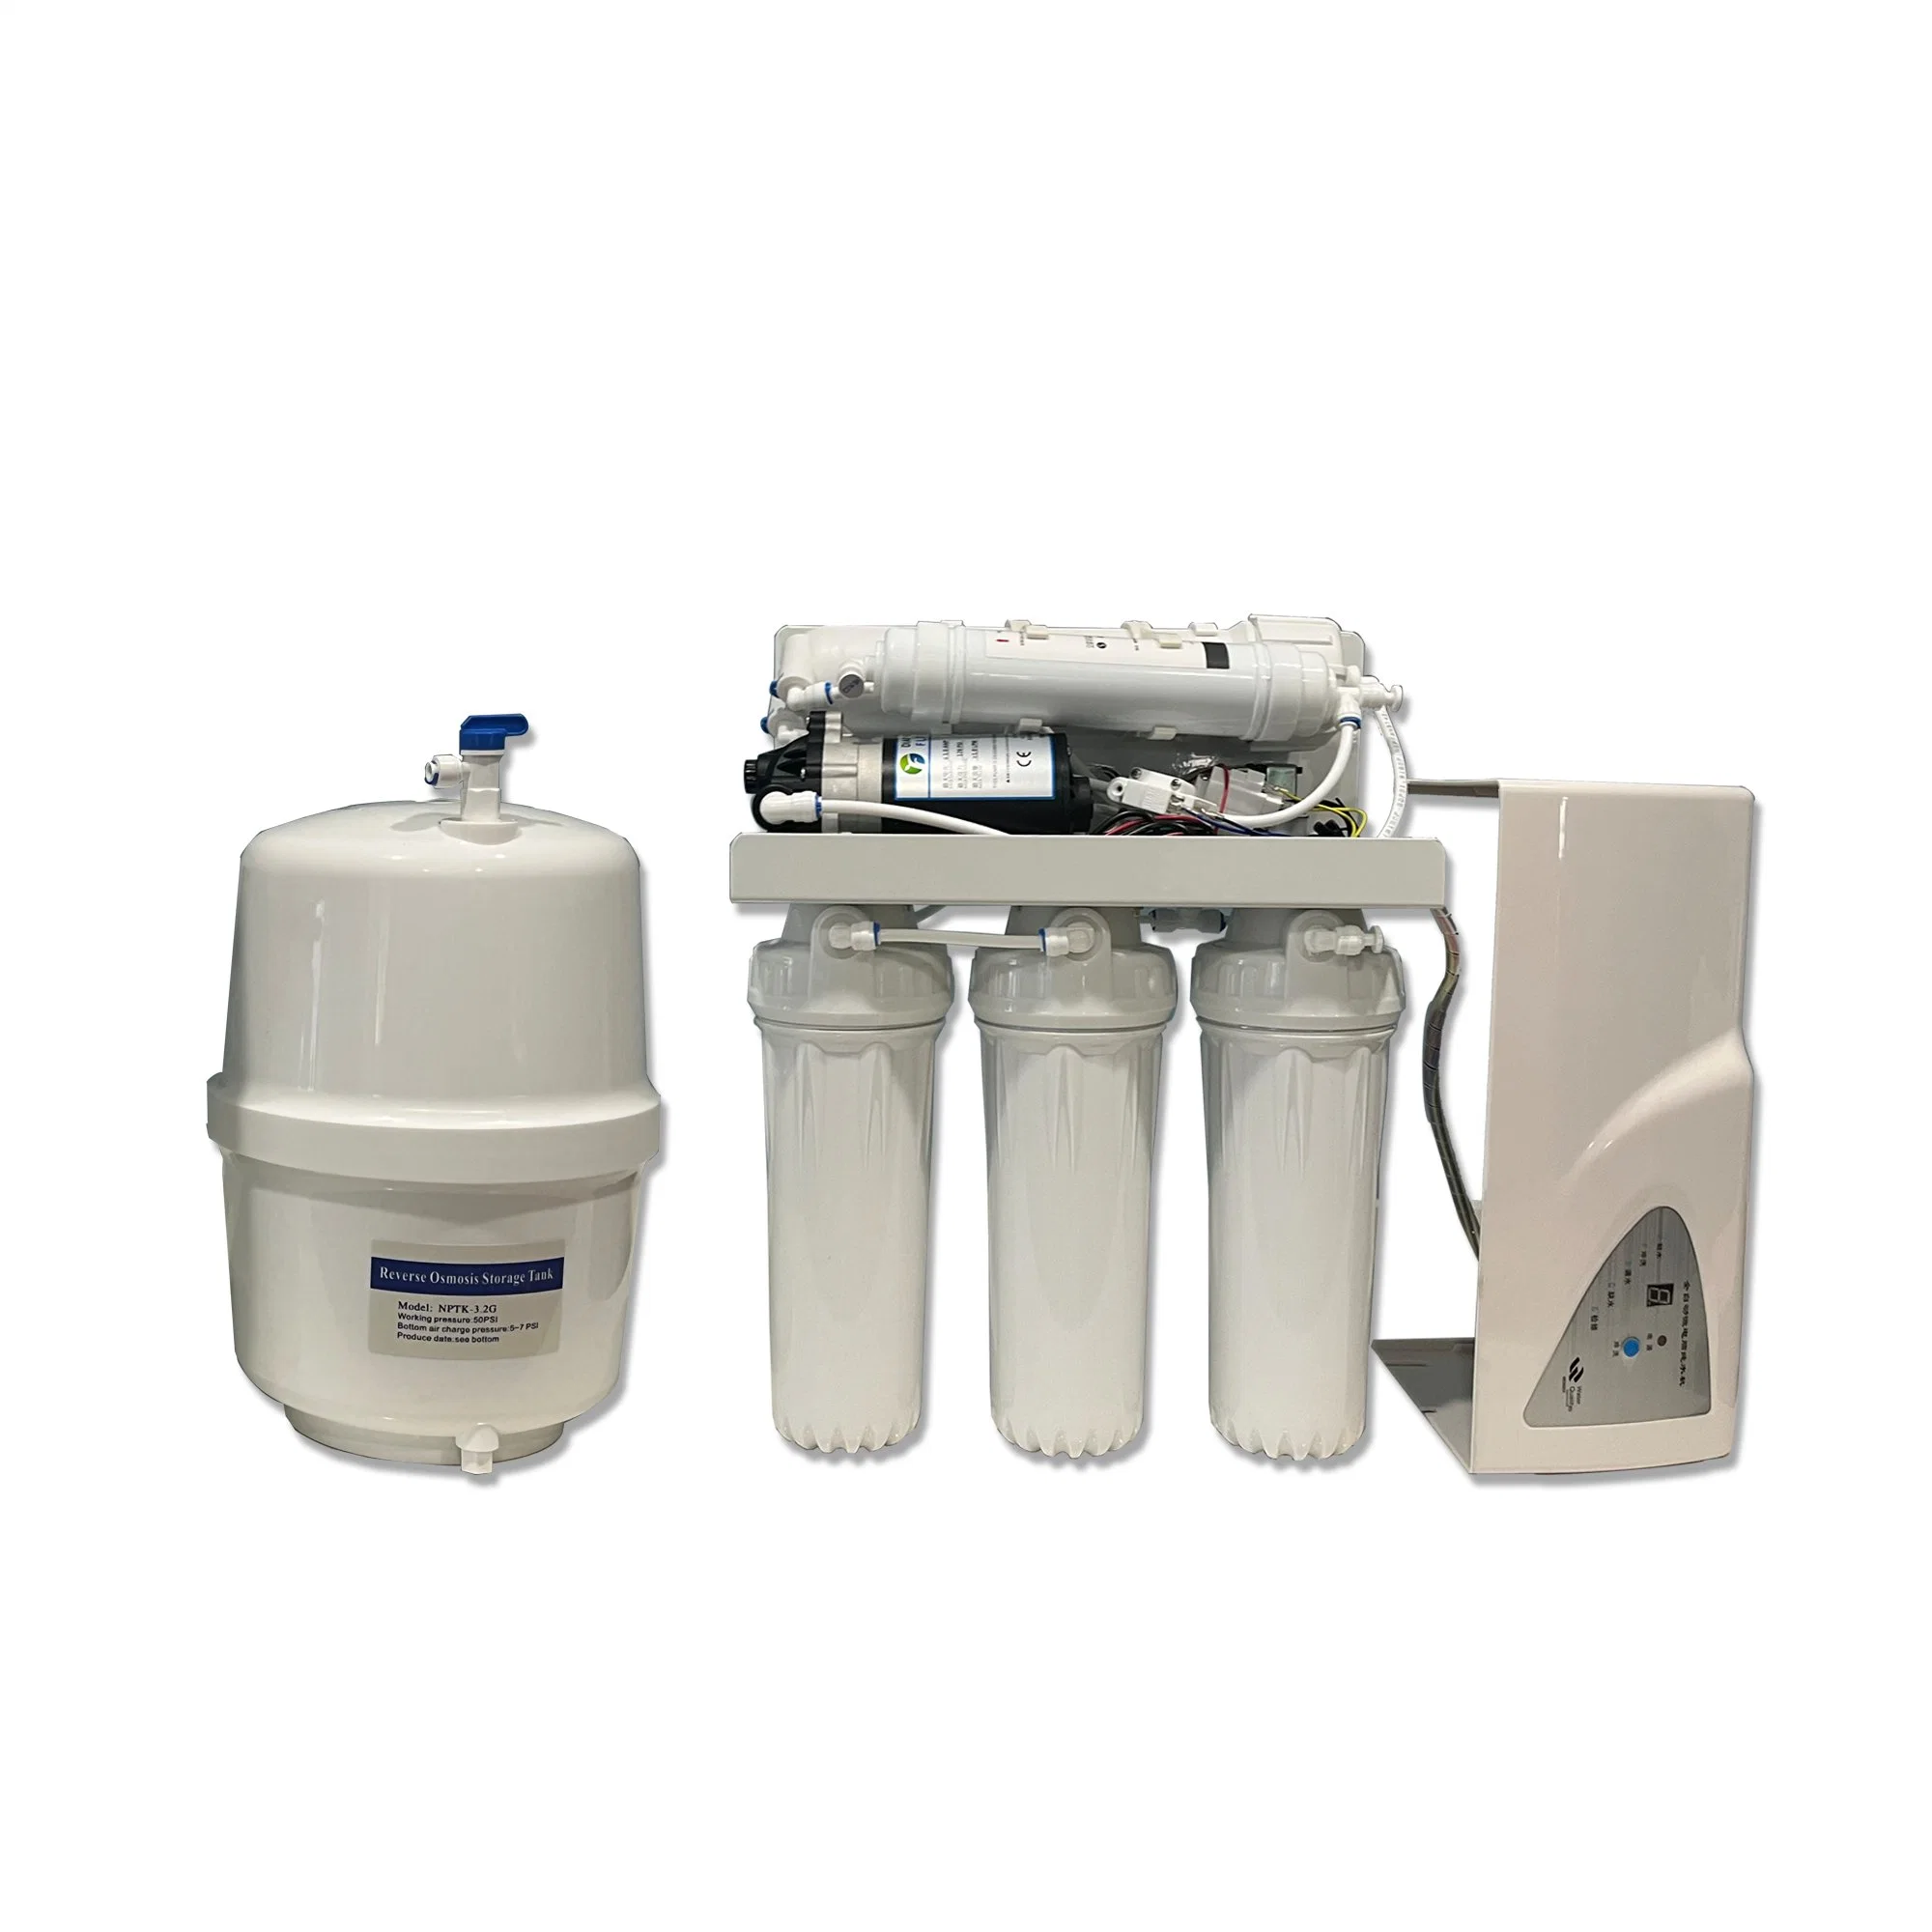 نظام فلترة المياه من الجهة المصنعة 5 مراحل مياه نقية للشرب مباشرة جهاز تنقية المياه RO الخاص بالماكينة